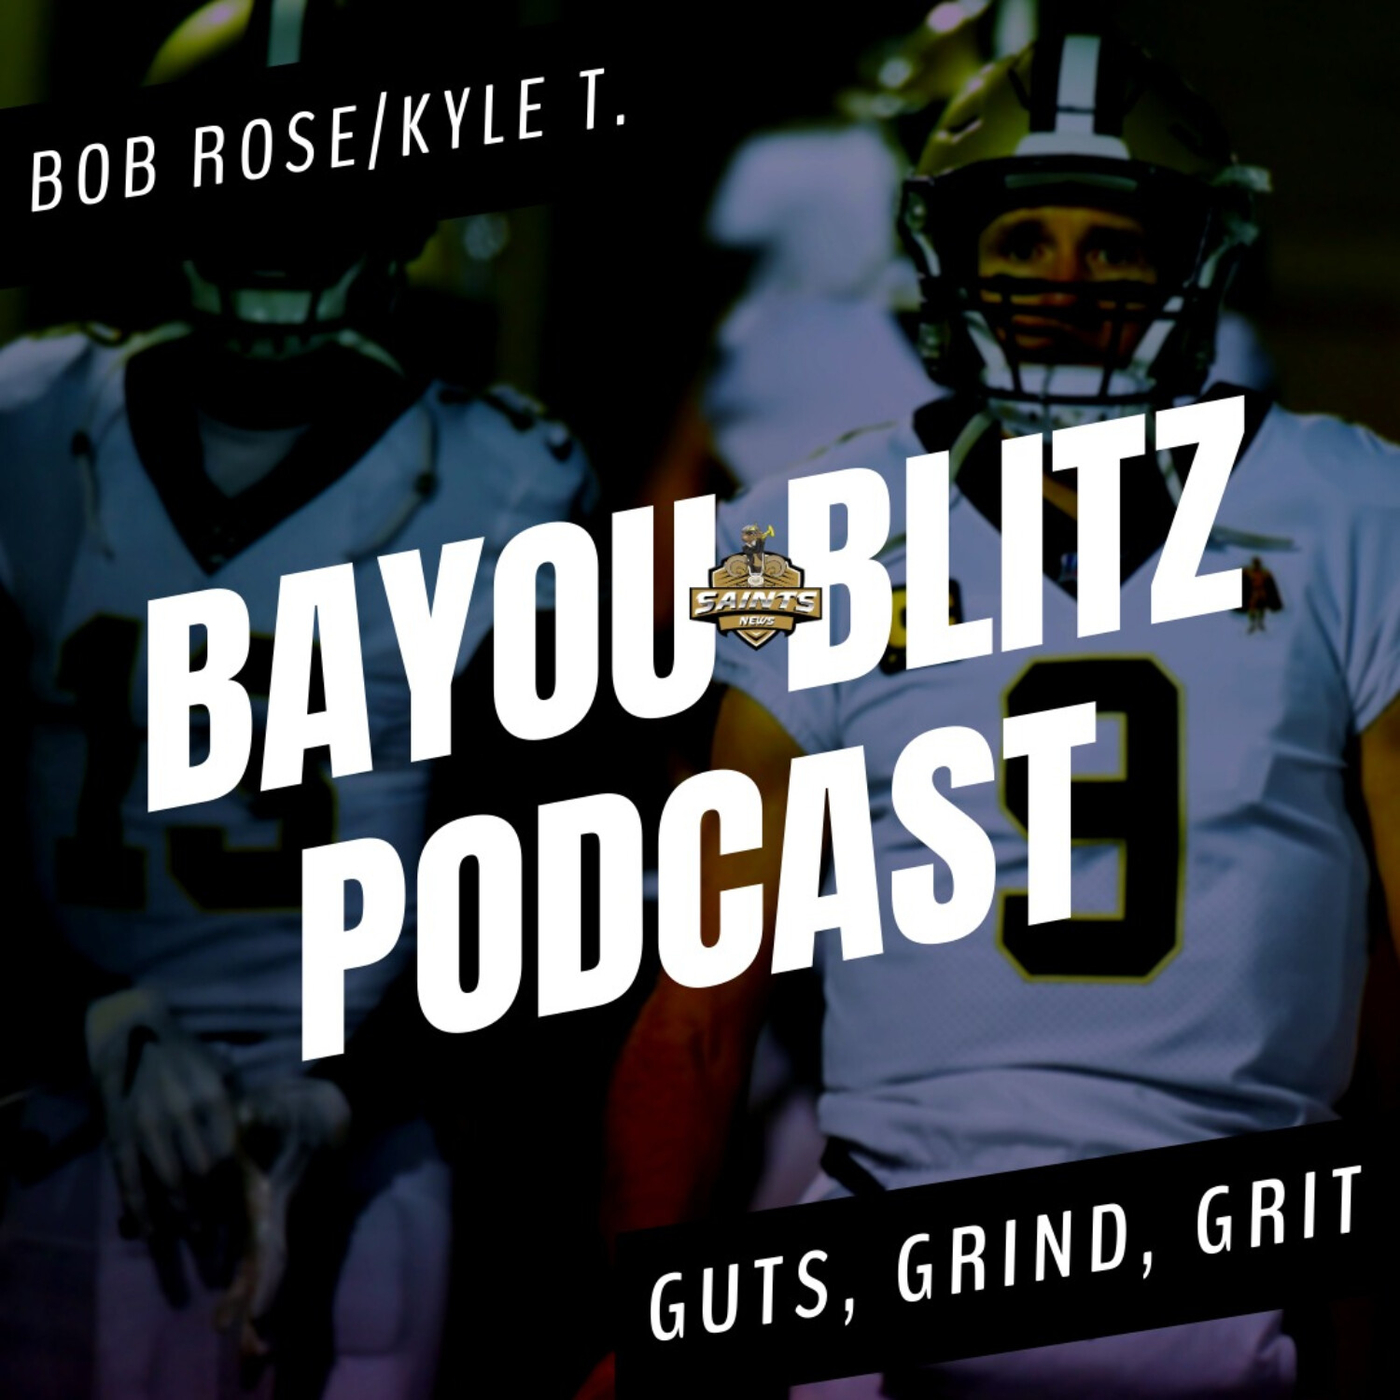 Bayou Blitz Podcast: Guts, Grind, Grit